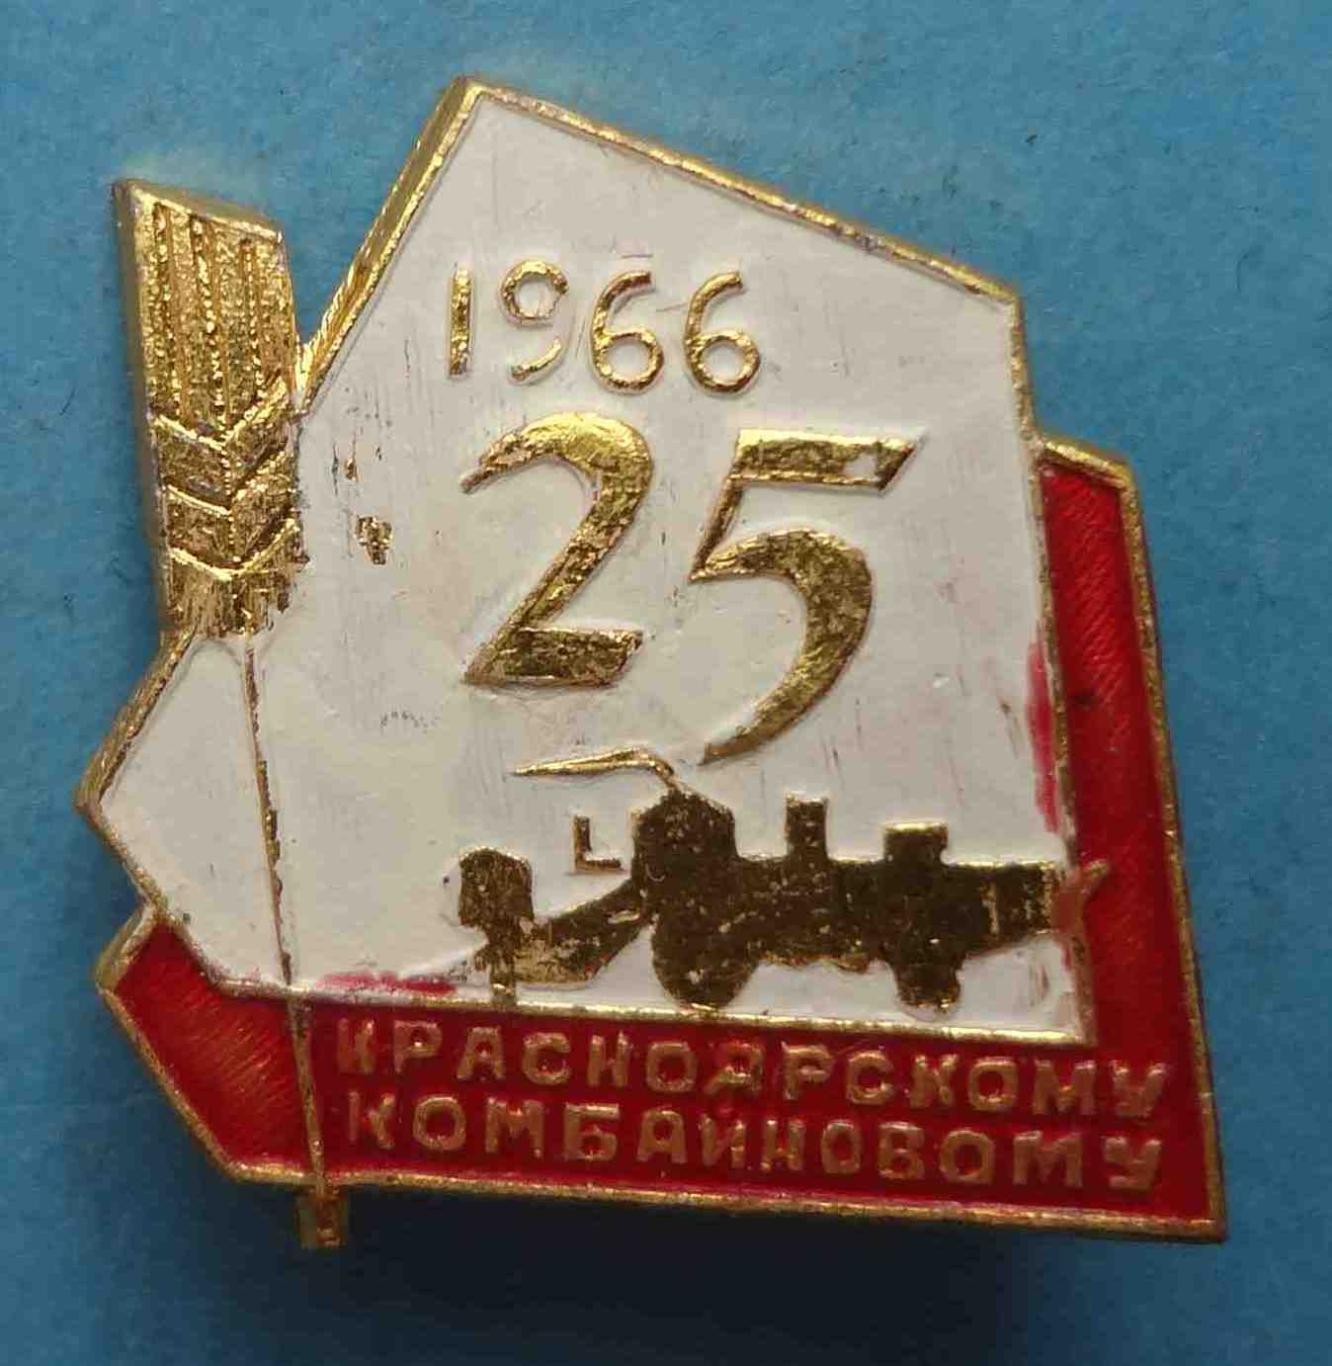 25 лет Красноярскому комбайновому заводу 1966 (31)